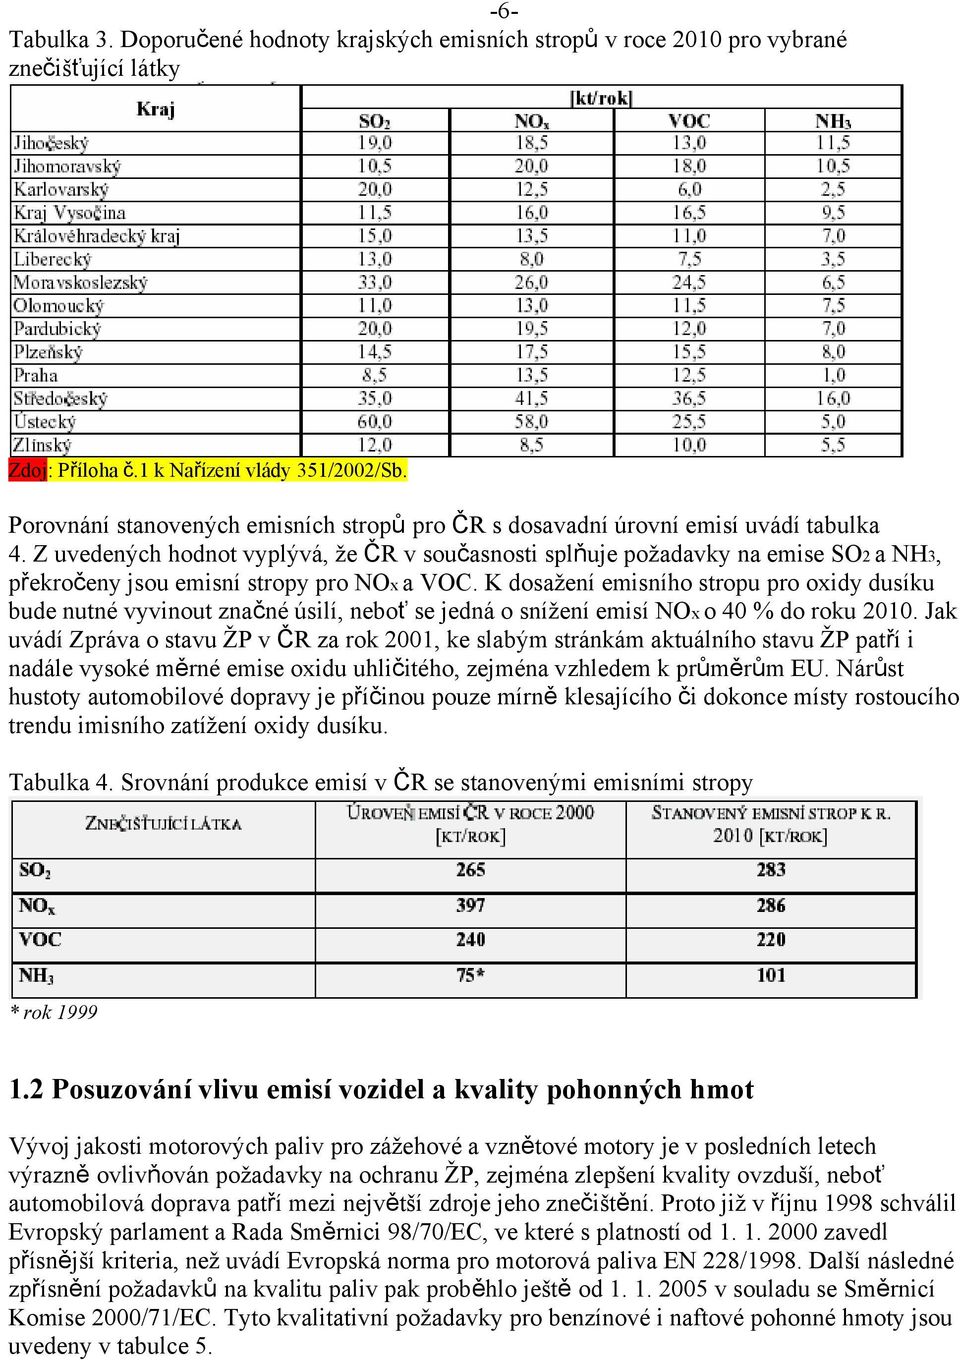 Z uvedených hodnot vyplývá, že ČR v současnosti splňuje požadavky na emise SO2 a NH3, překročeny jsou emisní stropy pro NOx a VOC.